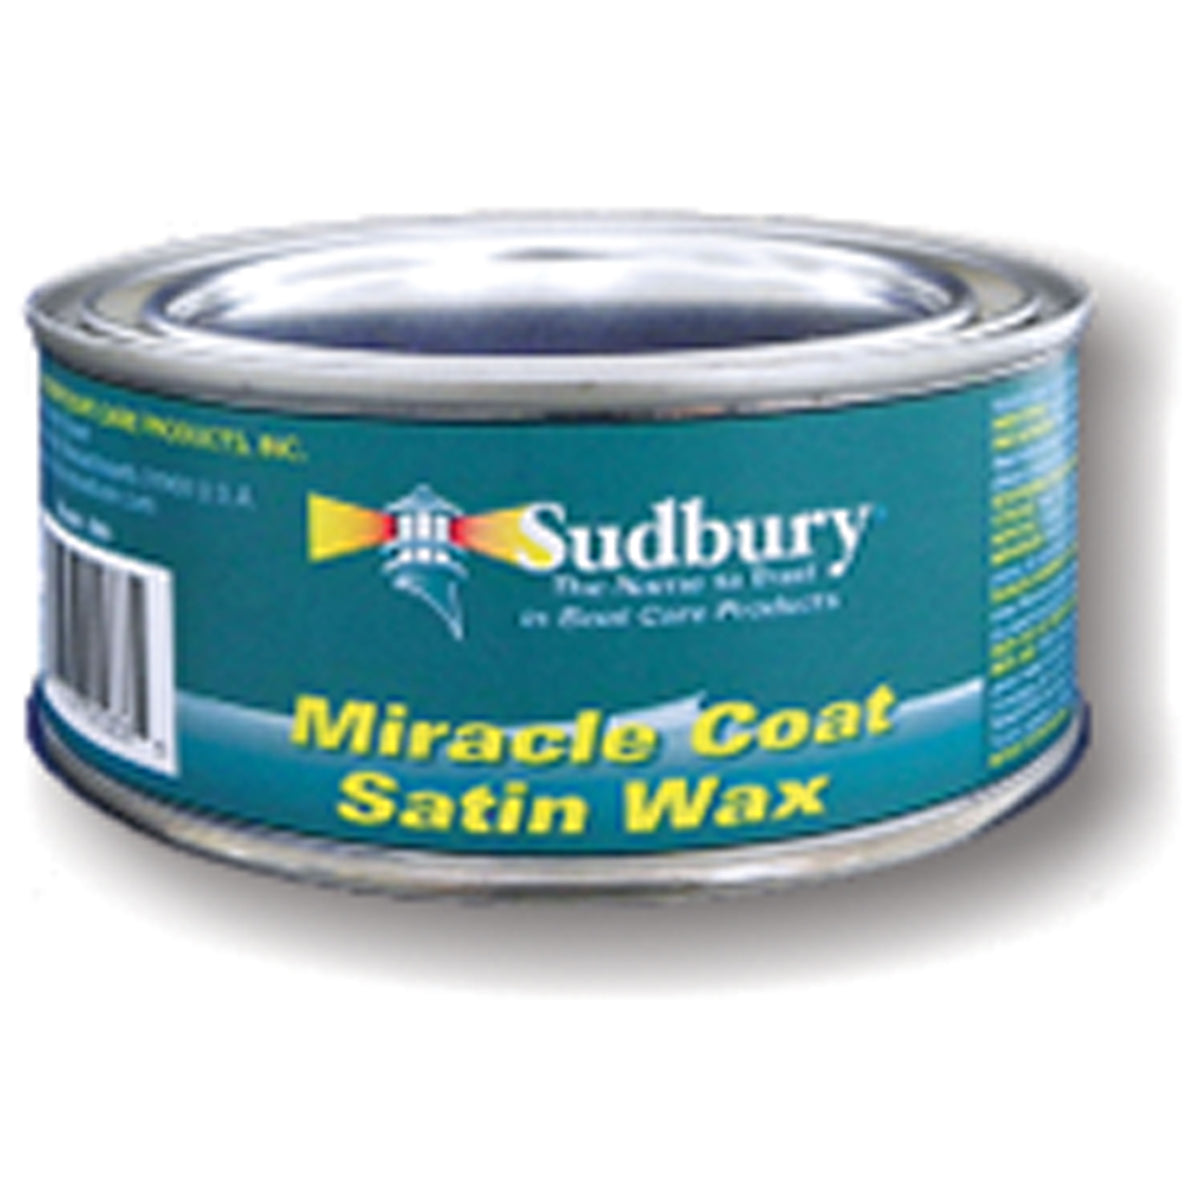 Sudbury 590 Miracle Coat Satin Wax - 10 oz.